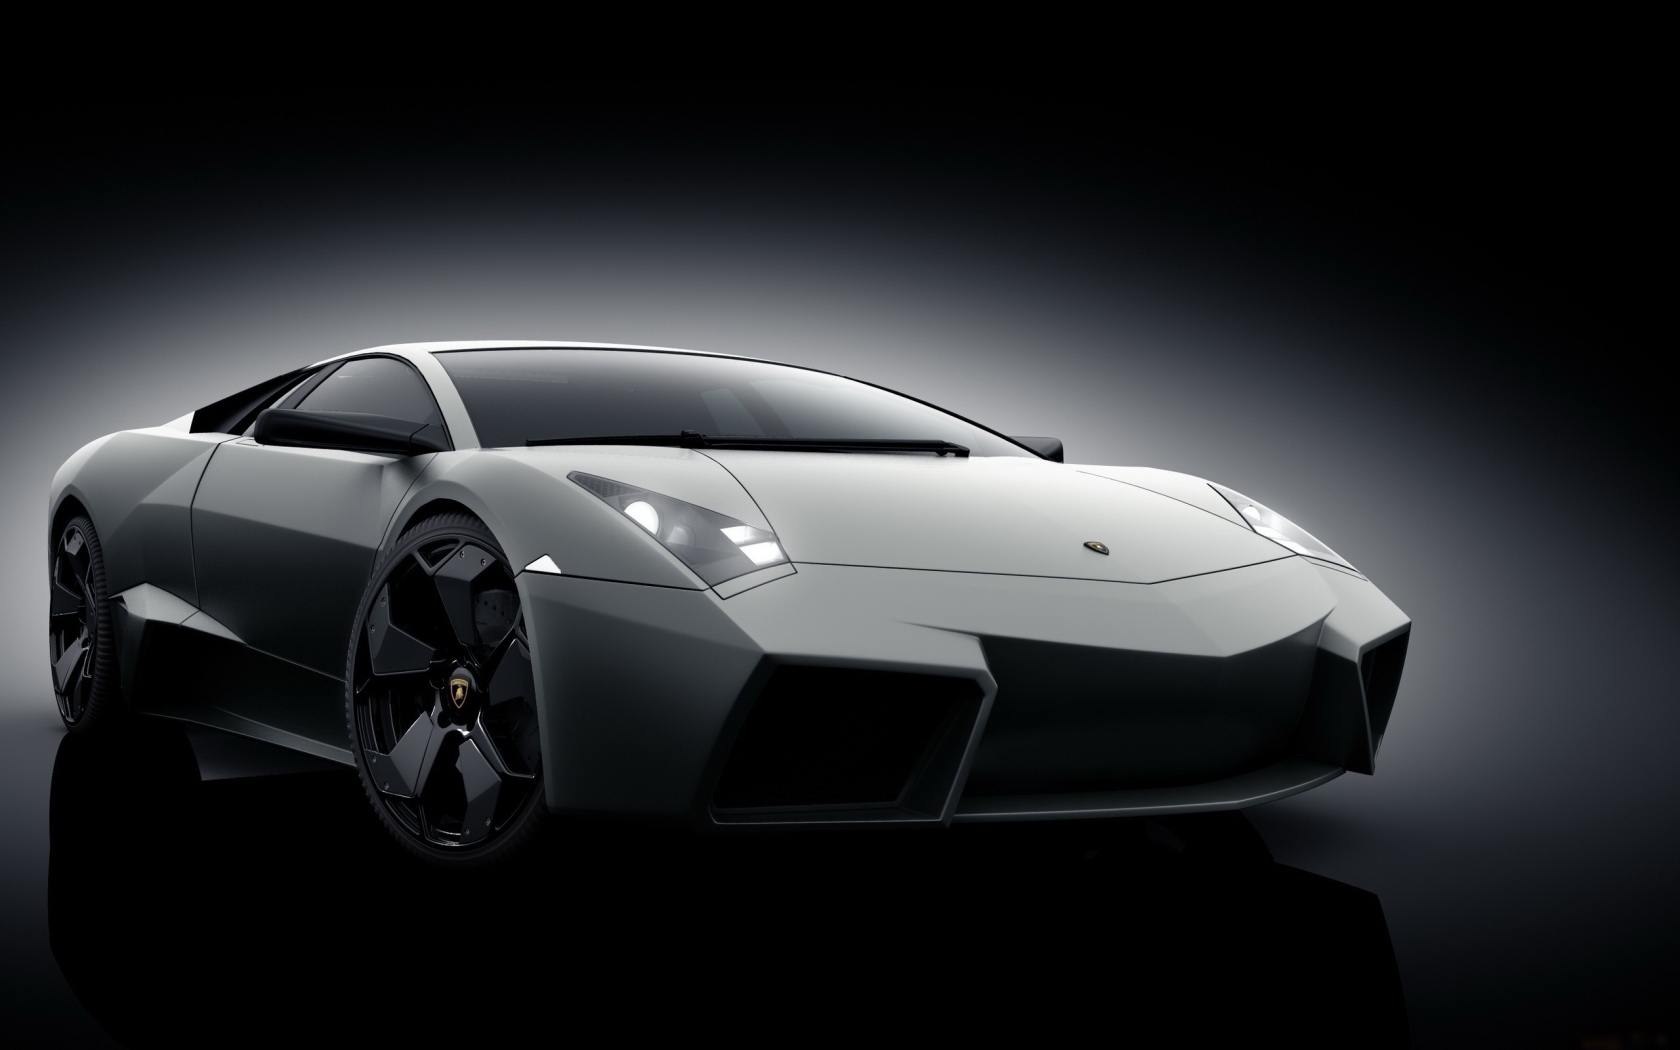 Grey Lamborghini Reventon for 1680 x 1050 widescreen resolution